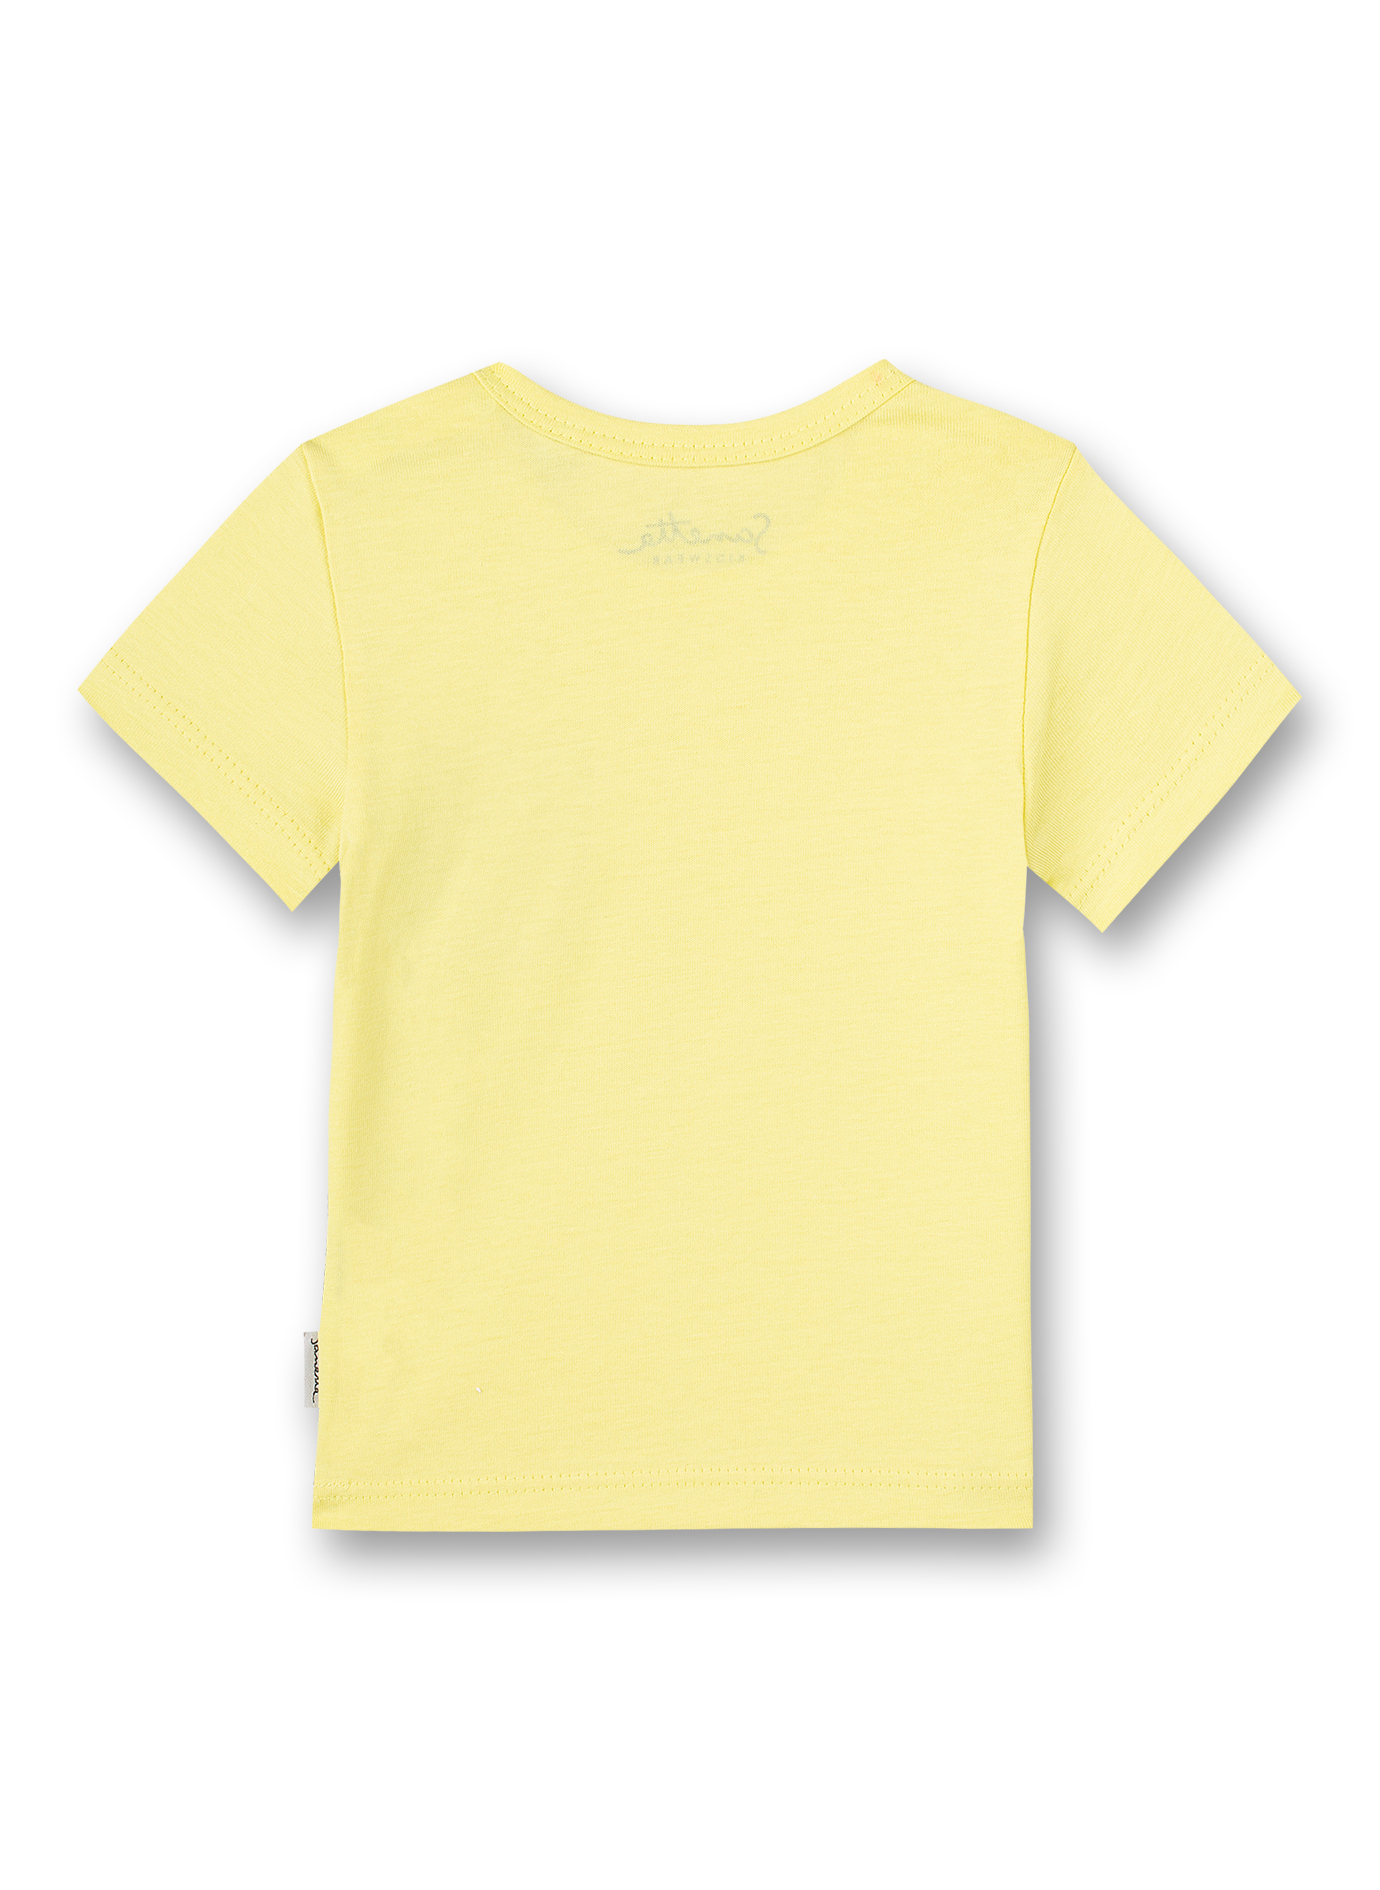 Jungen T-Shirt Gelb Beach Crab